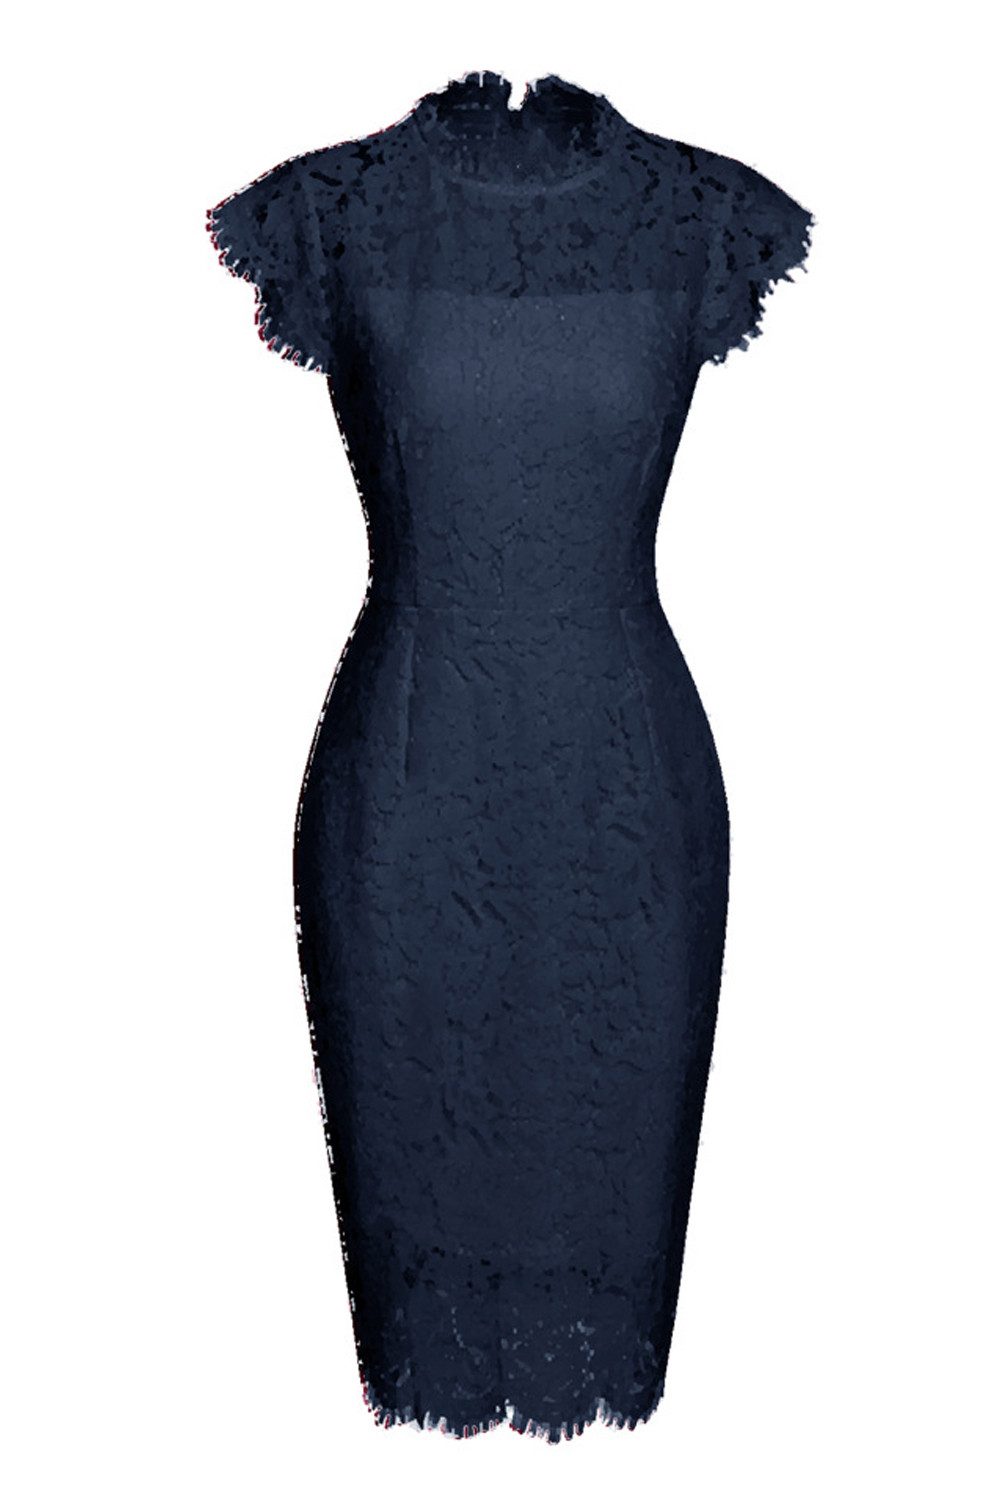 B.X Dirndl Ärmelloses Damen-kleid mit Spitze, Blumenmuster, Rundhalsausschnitt einfarbiges Spitze-Etuikleid mit schlankem Etuikleid für Damen